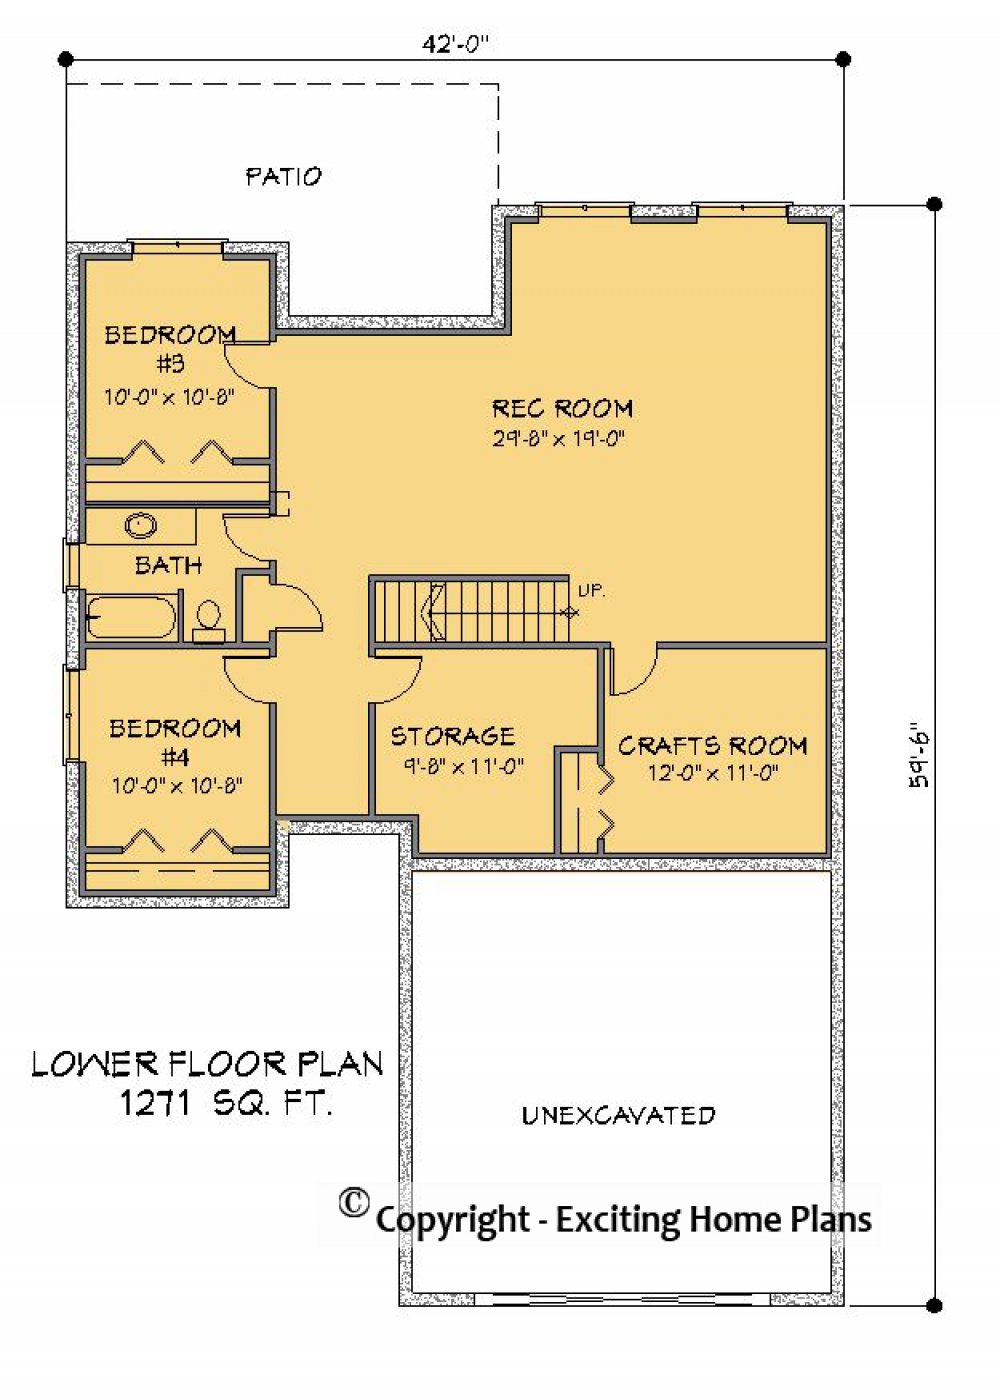 House Plan E1300-10 Lower Floor Plan